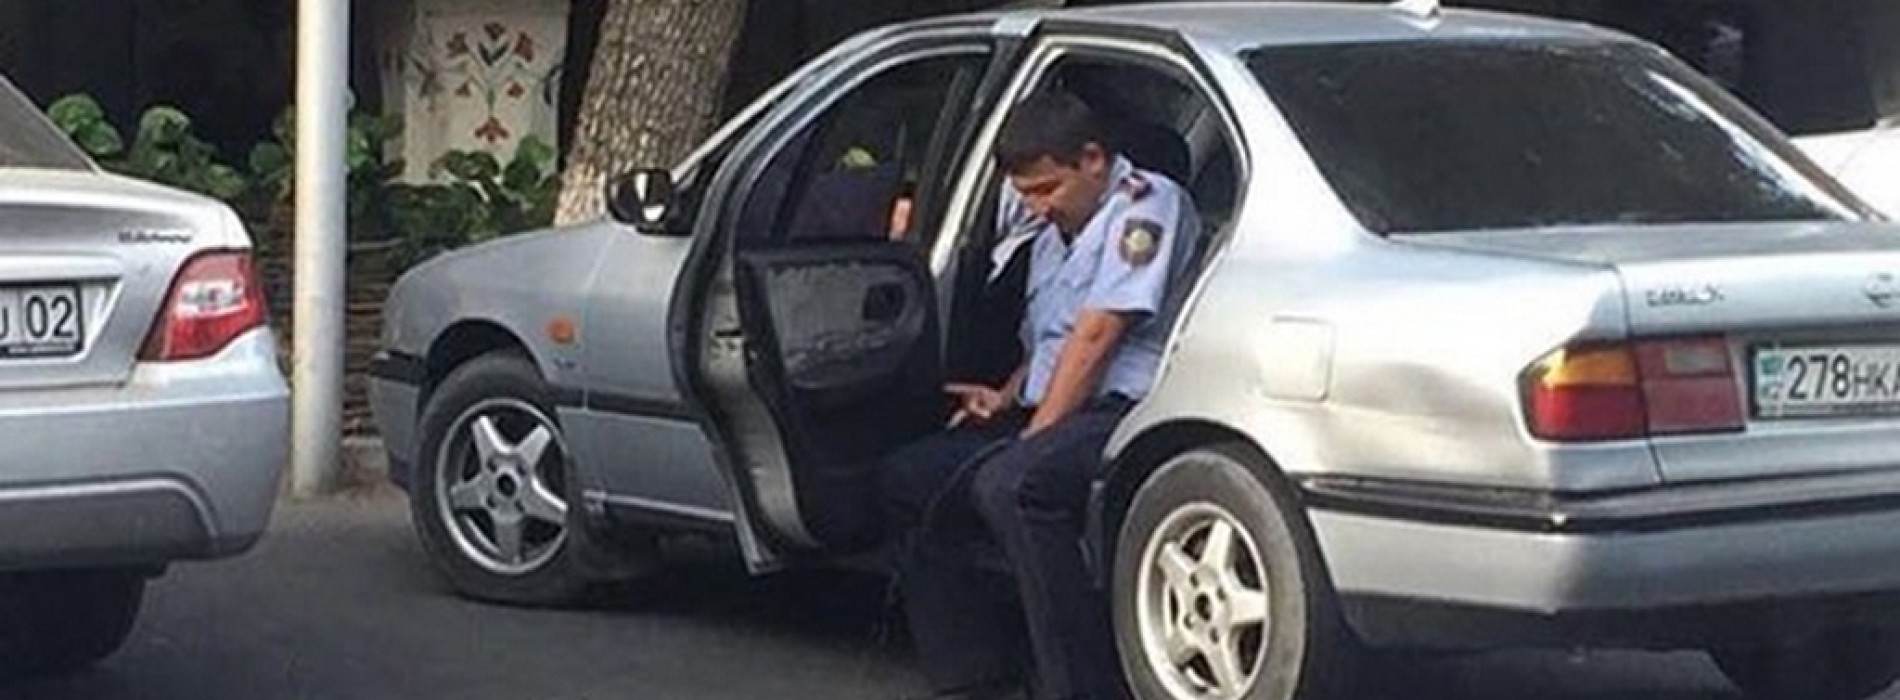 Стал известен владелец автомобиля, который попал на фото с писающим полицейским